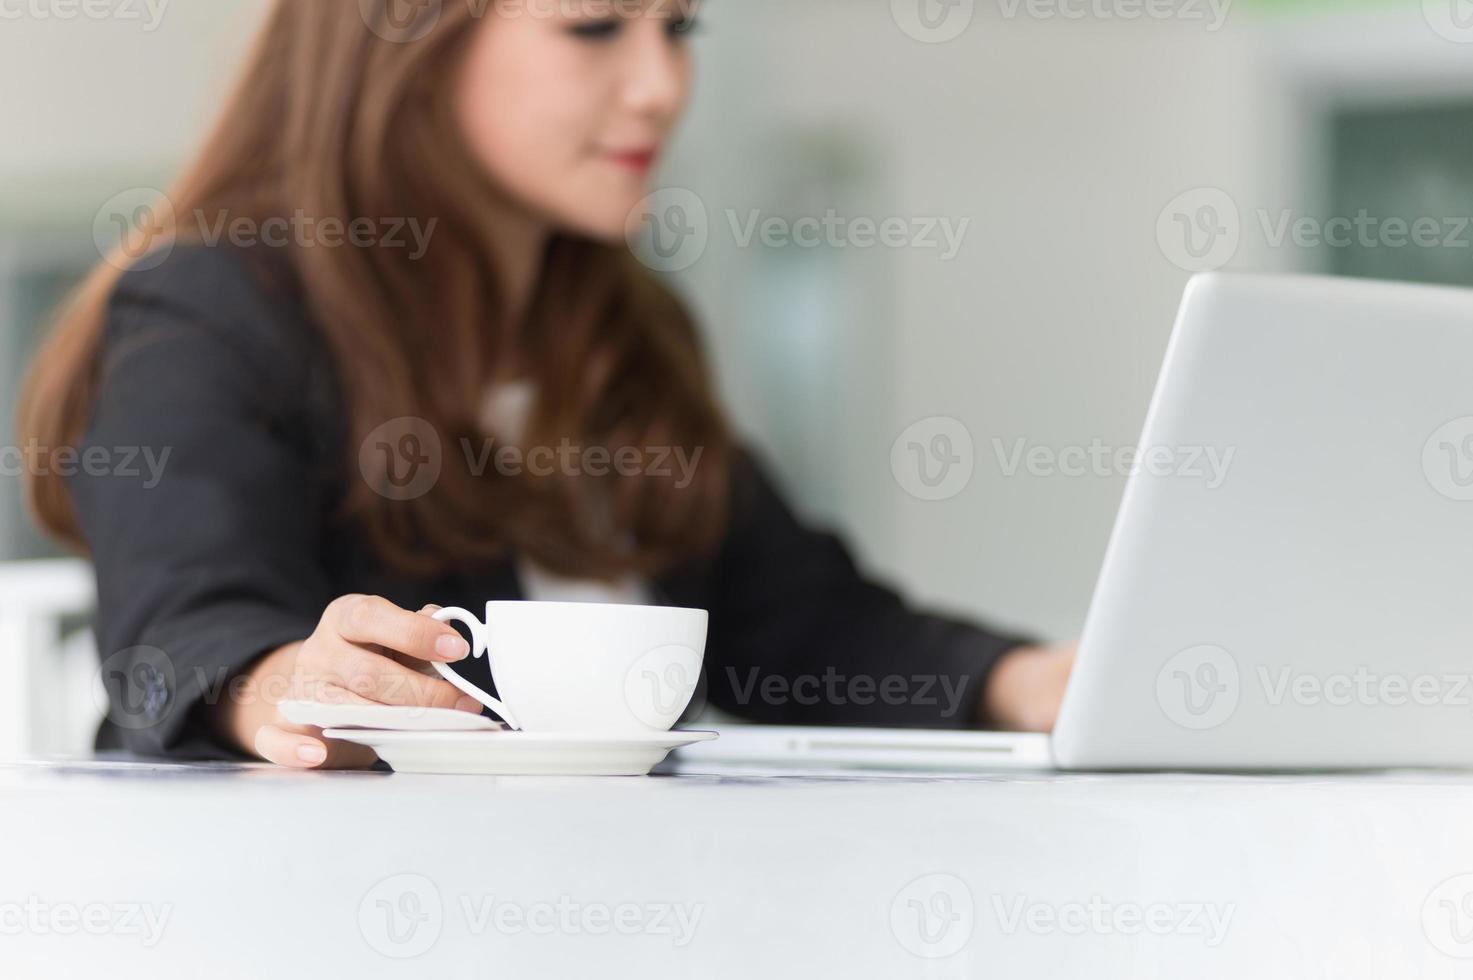 donna dell'Asia in caffè con il computer portatile e caffè, concetto di affari foto